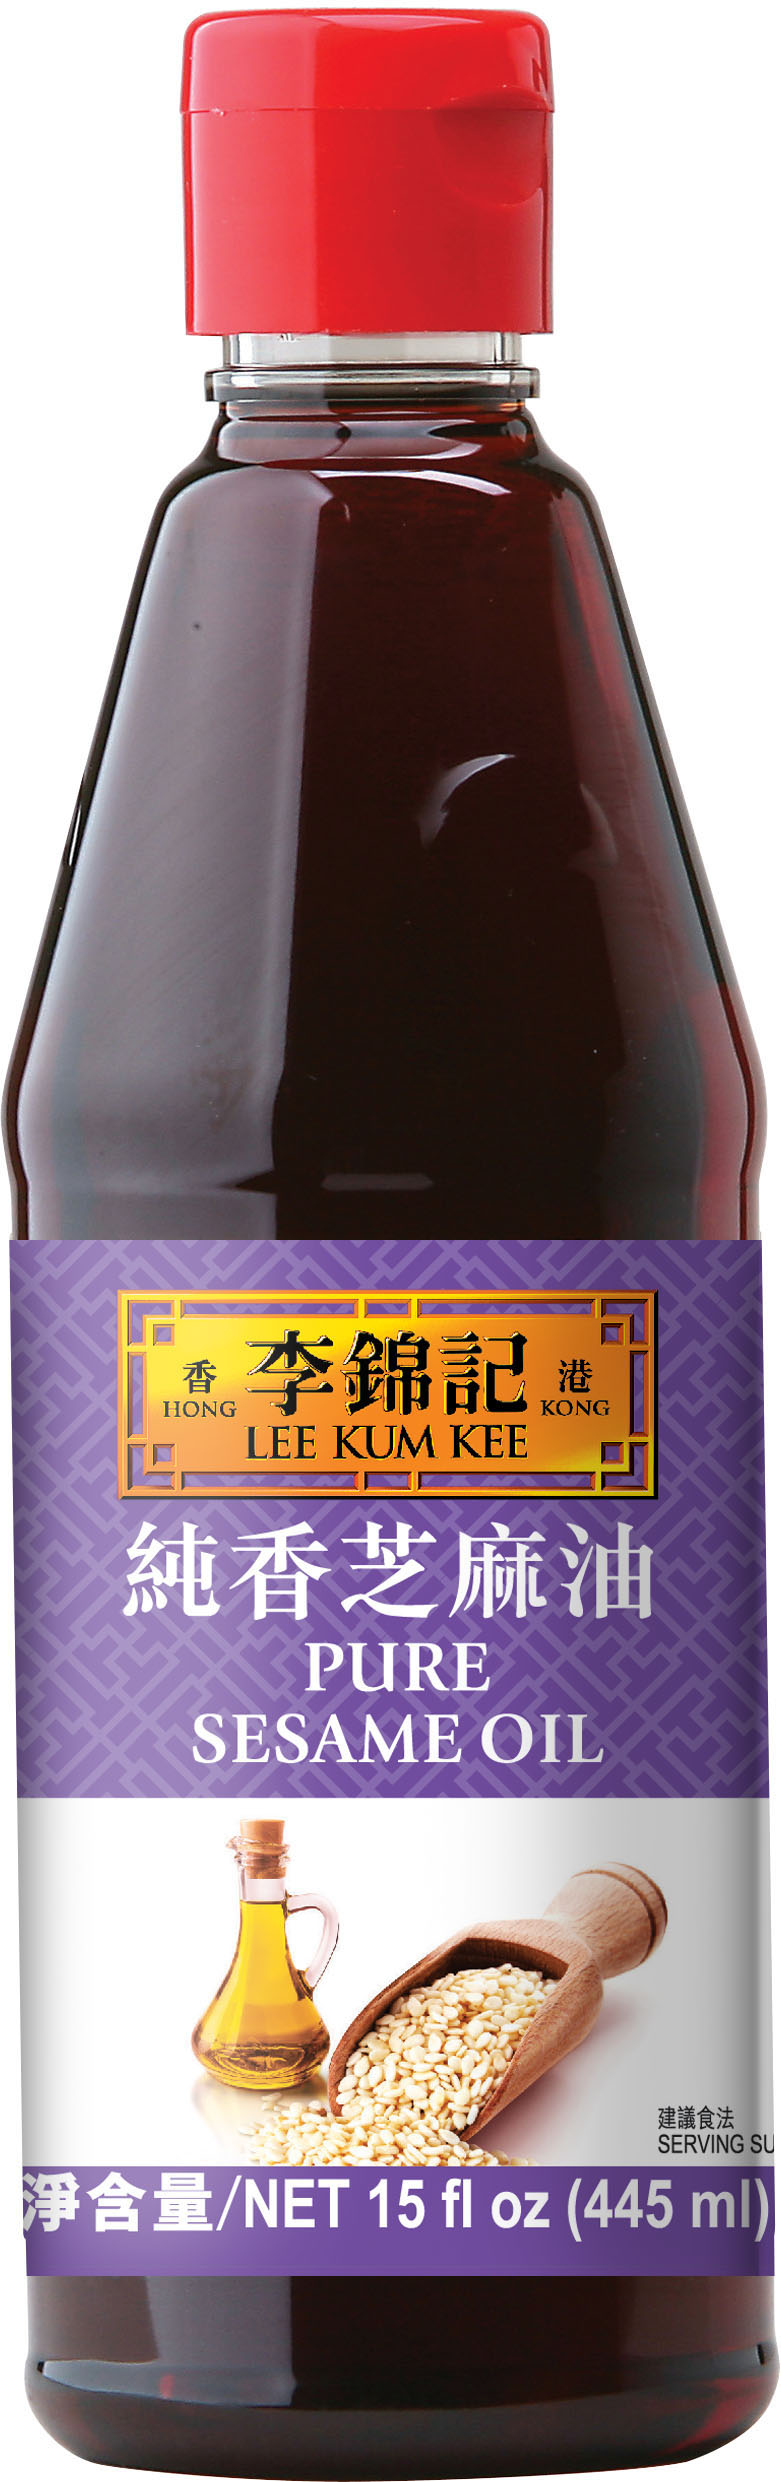 Pure Sesame Oil | Lee Kum Kee Professional US | USA